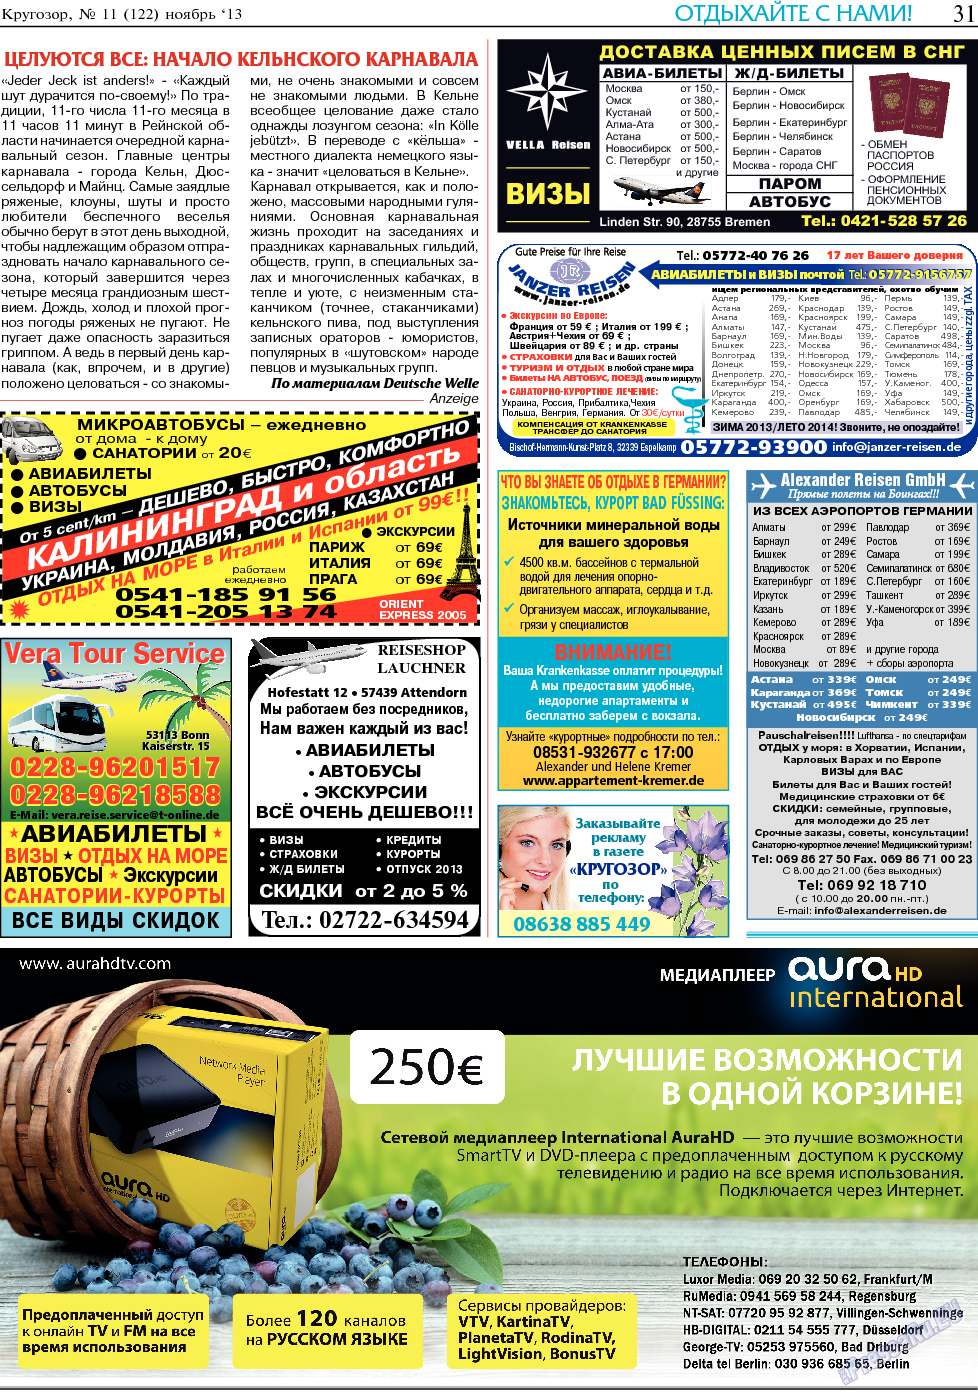 Кругозор, газета. 2013 №11 стр.31